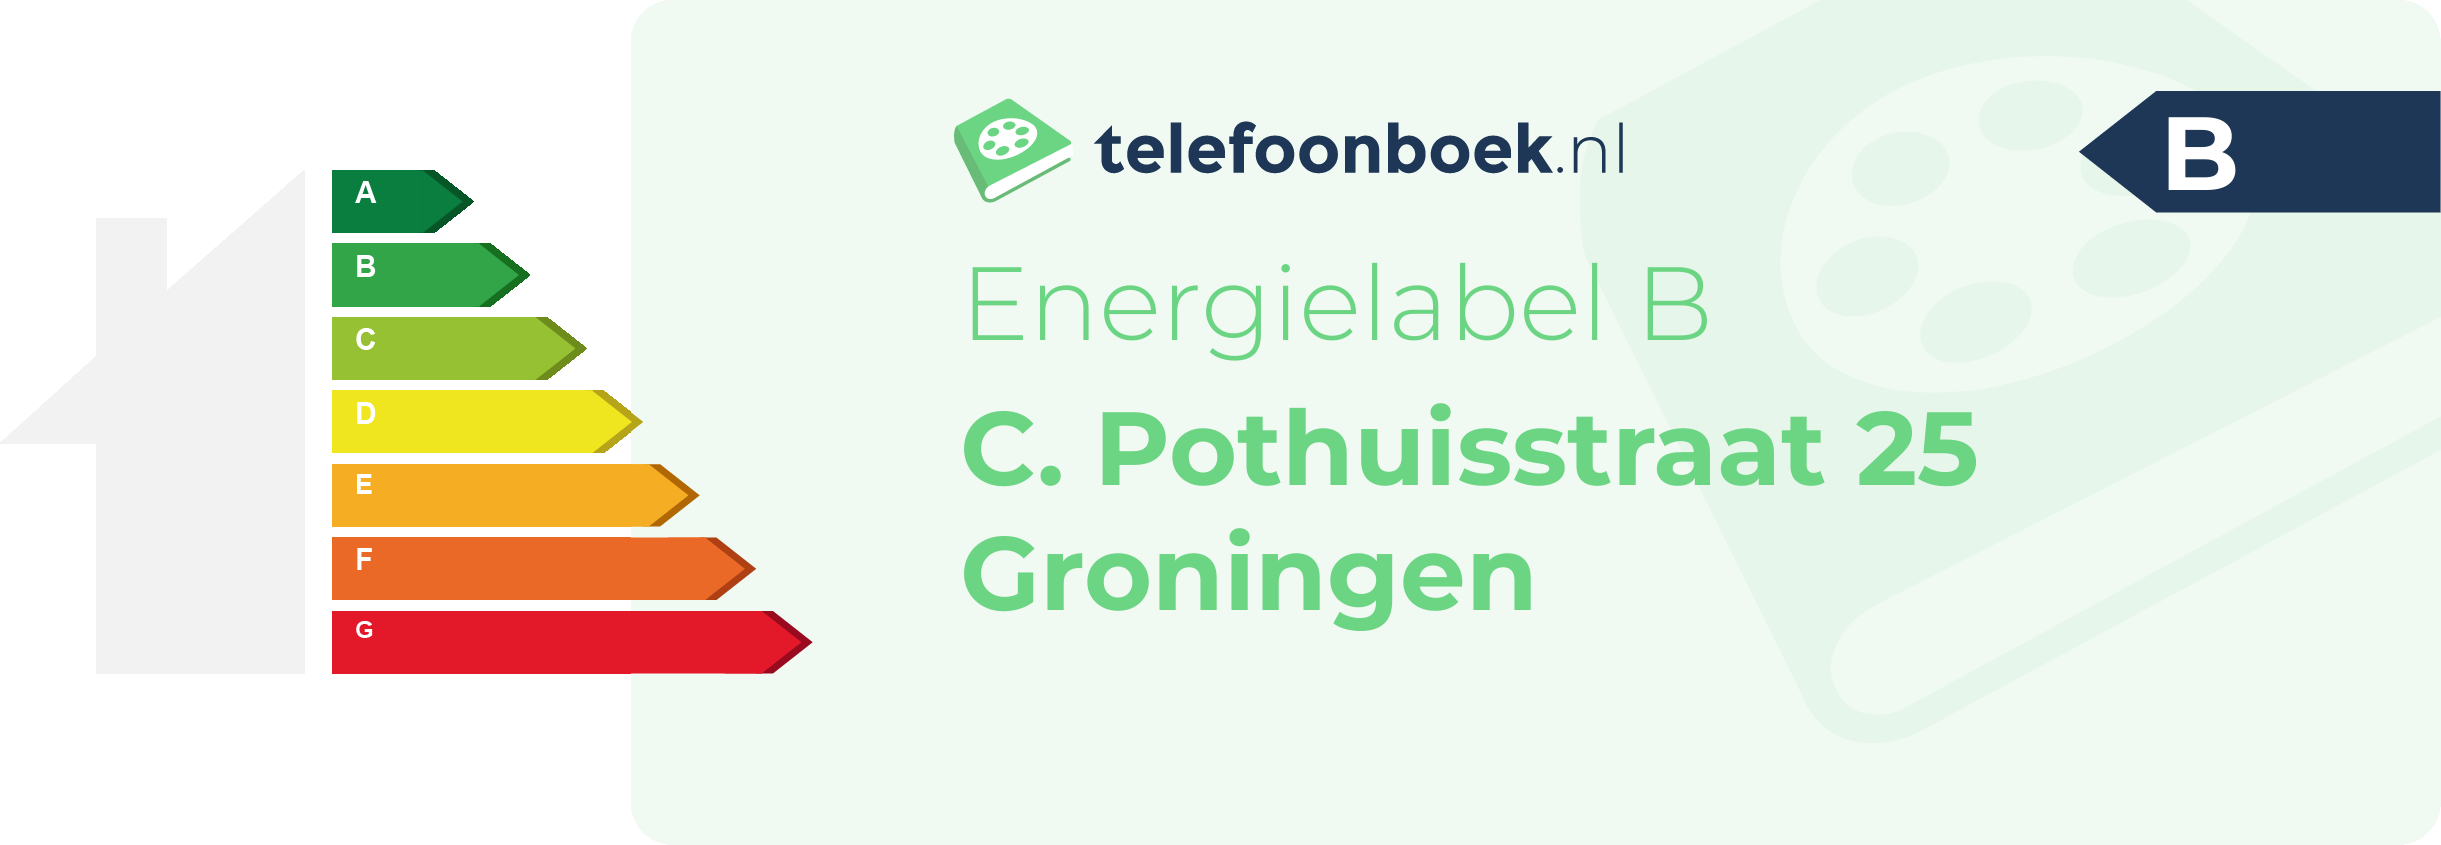 Energielabel C. Pothuisstraat 25 Groningen